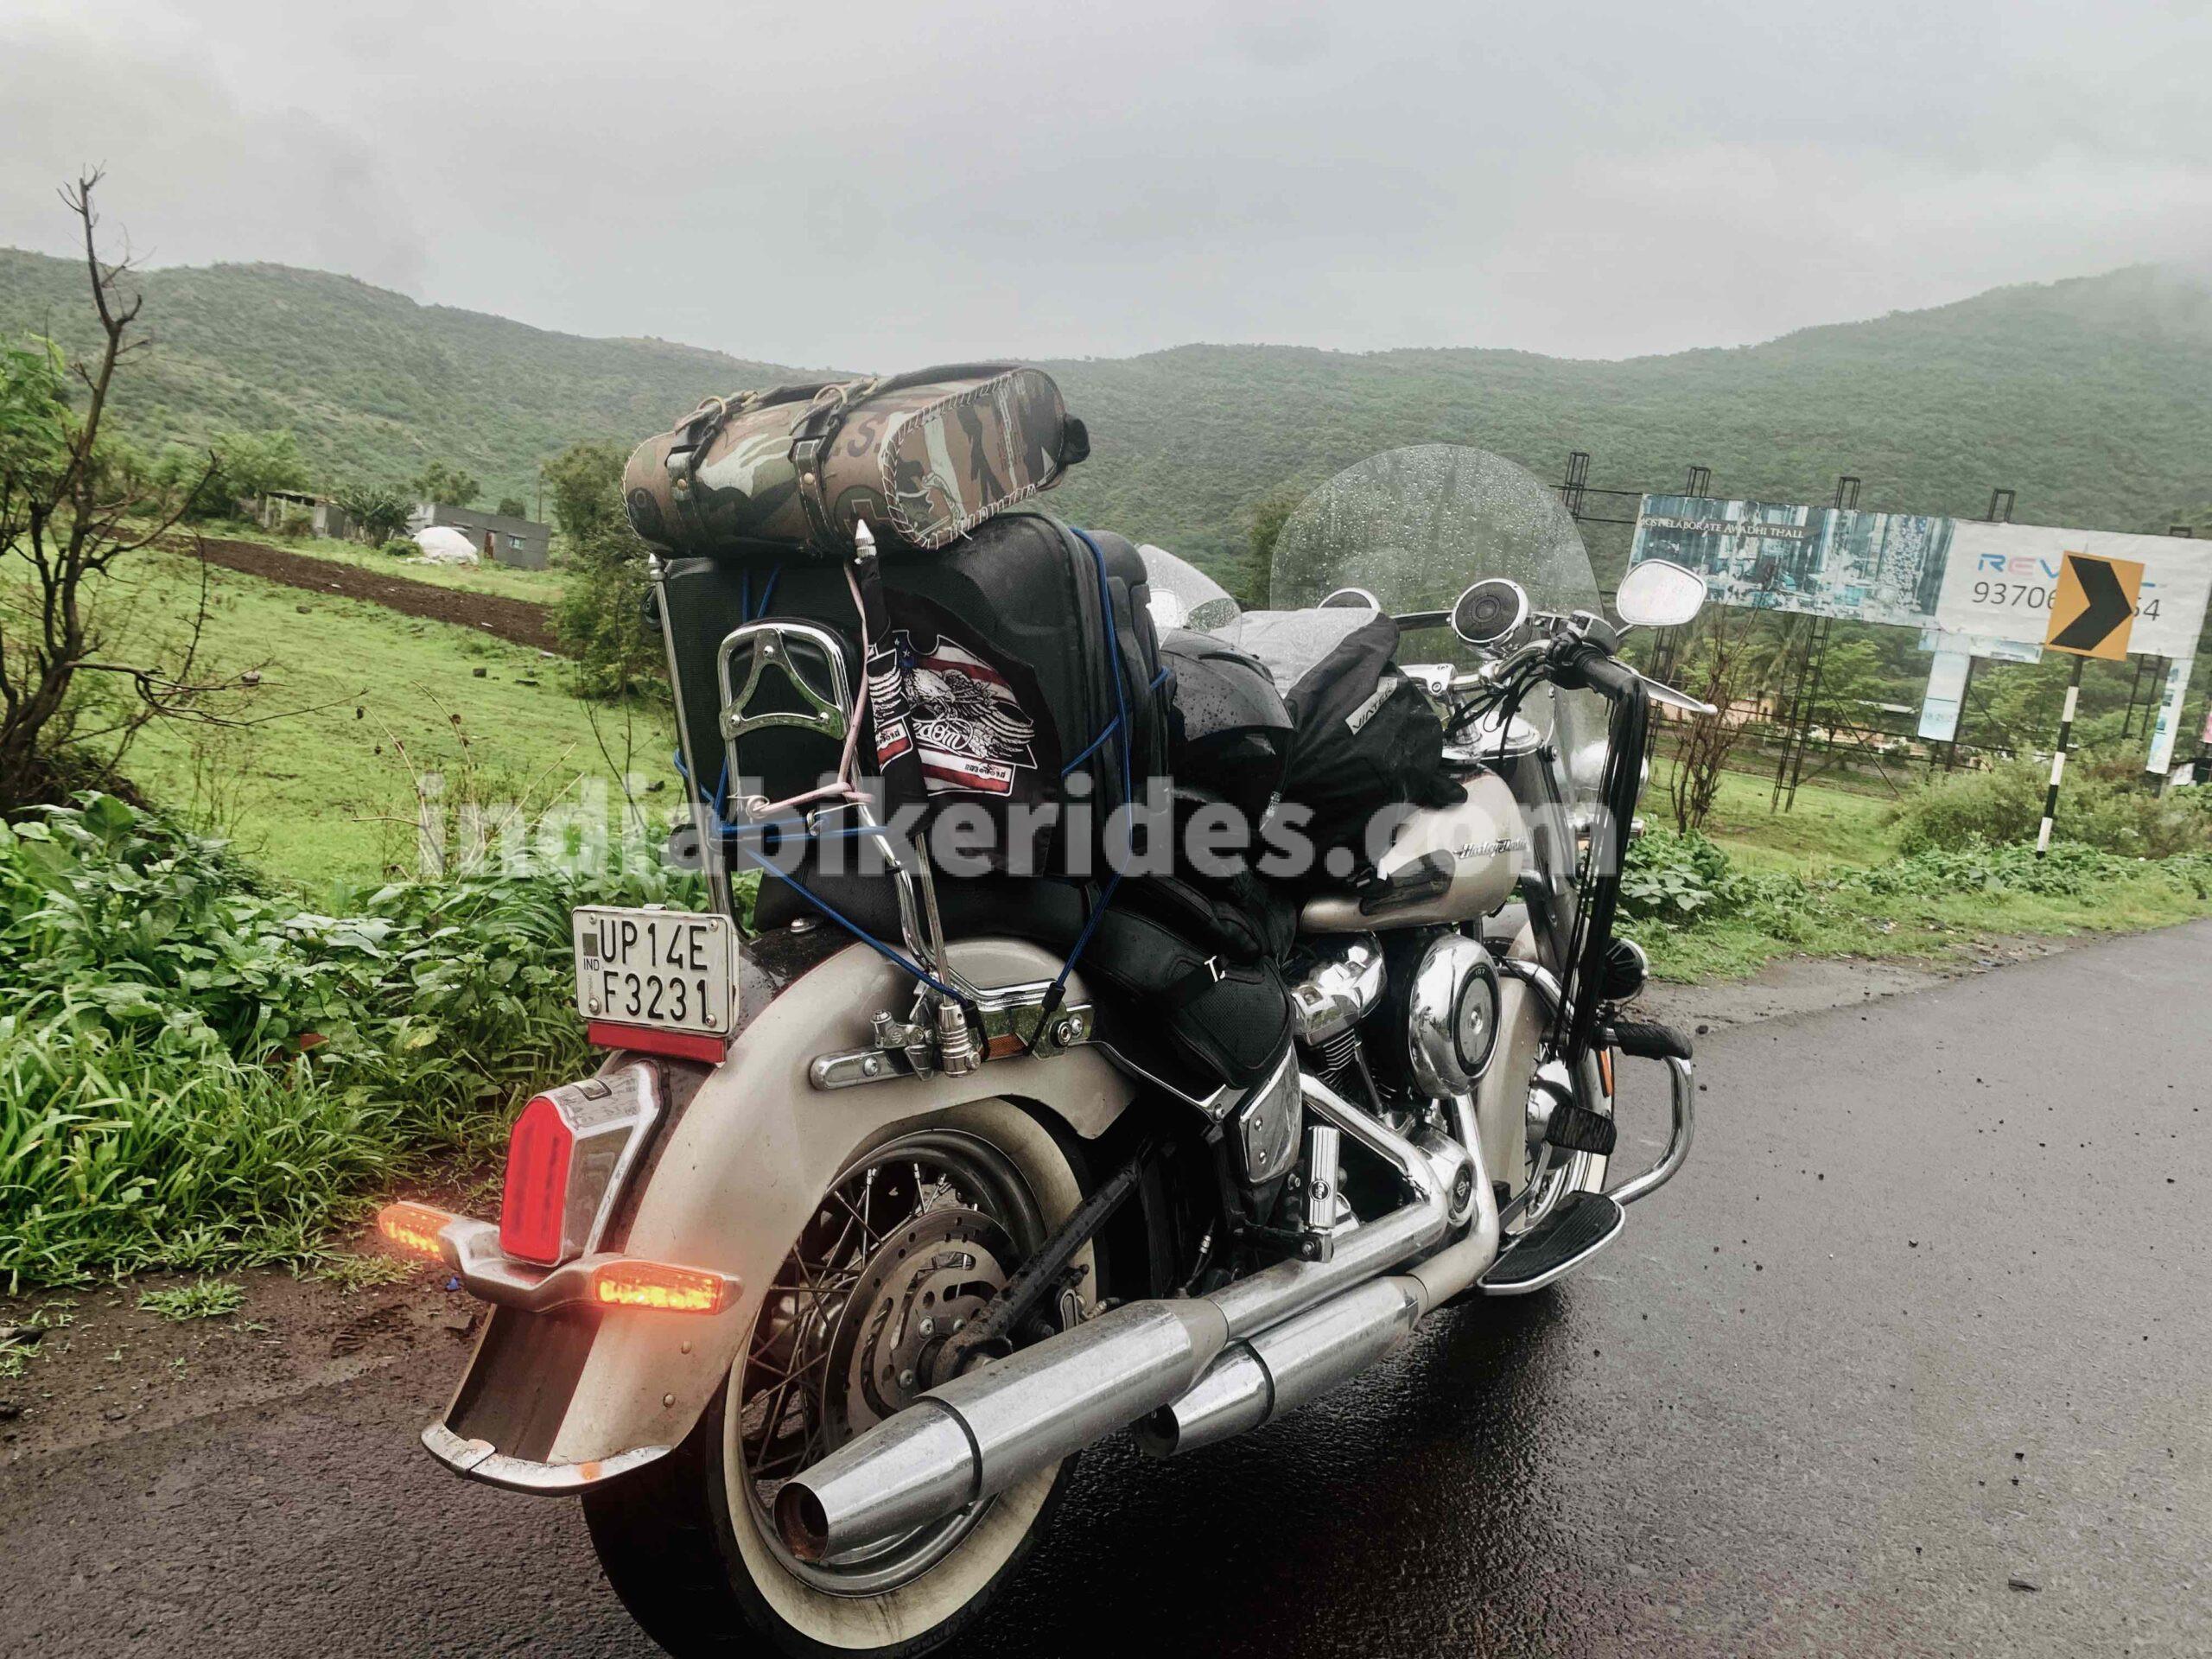 Harley Davidson, Khandala, India Bike rides